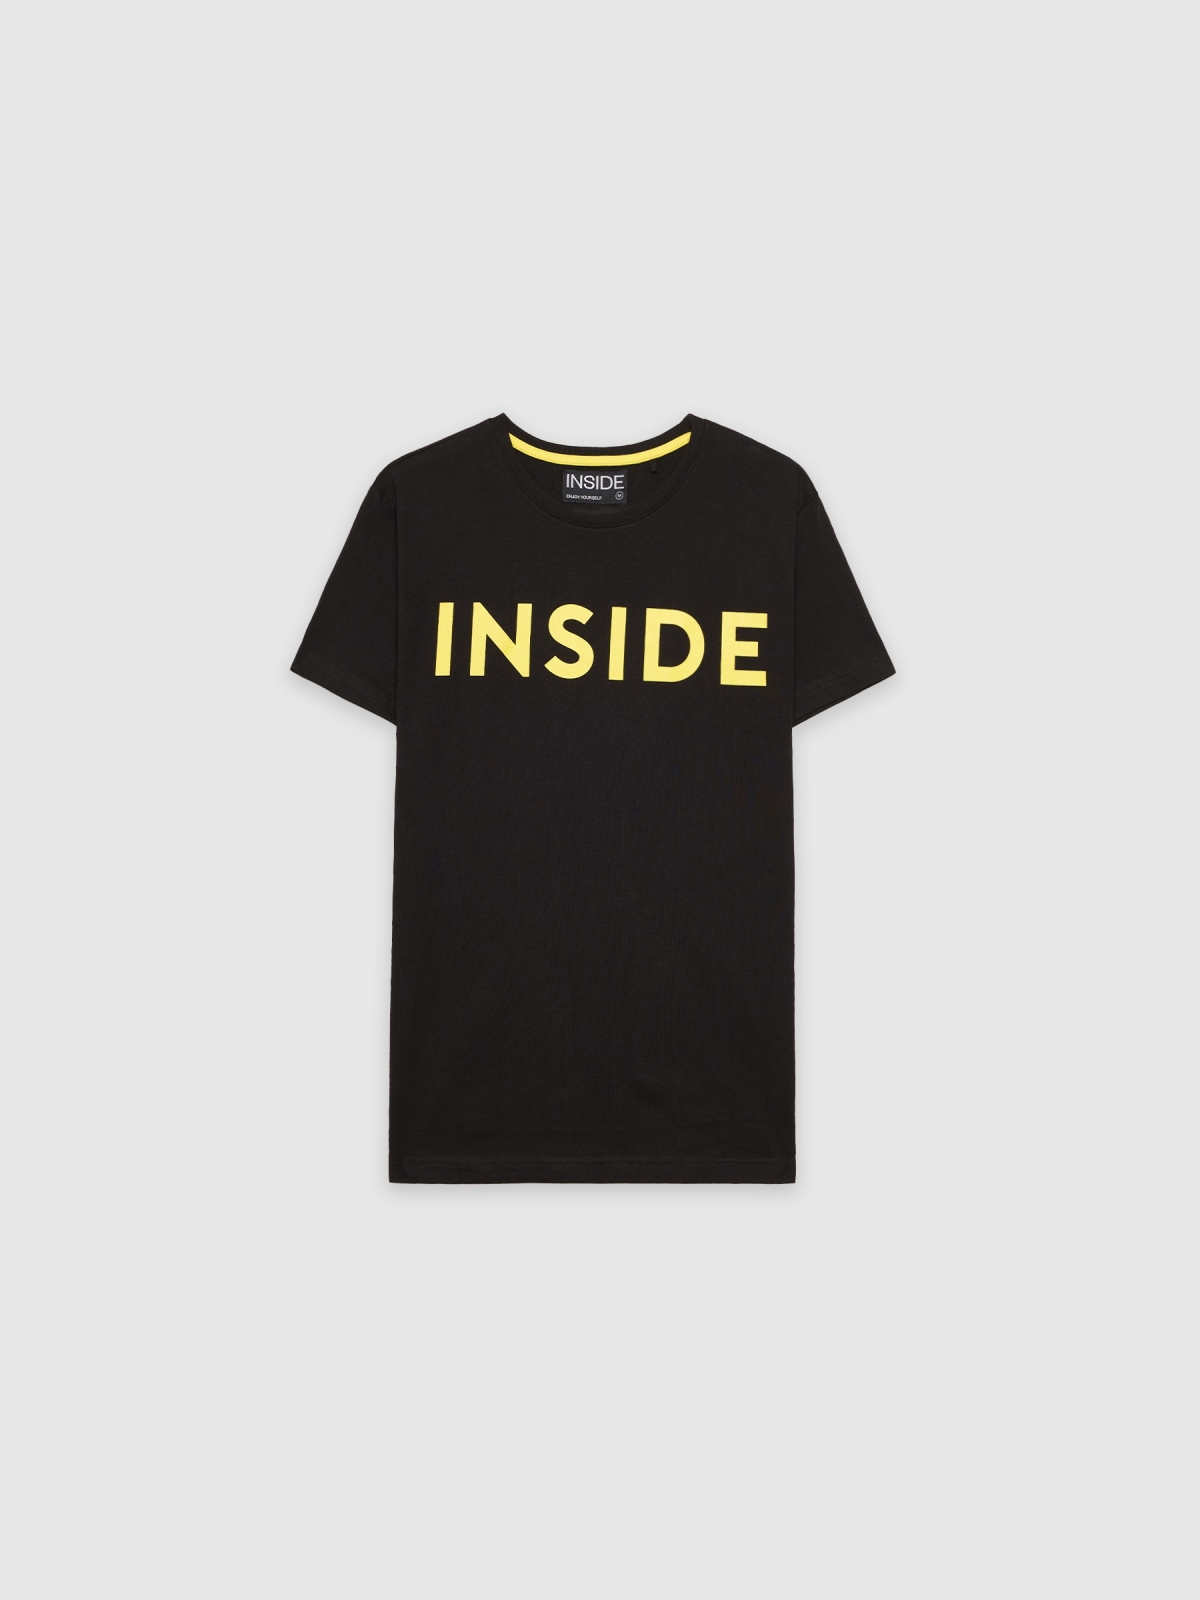  INSIDE basic T-shirt black